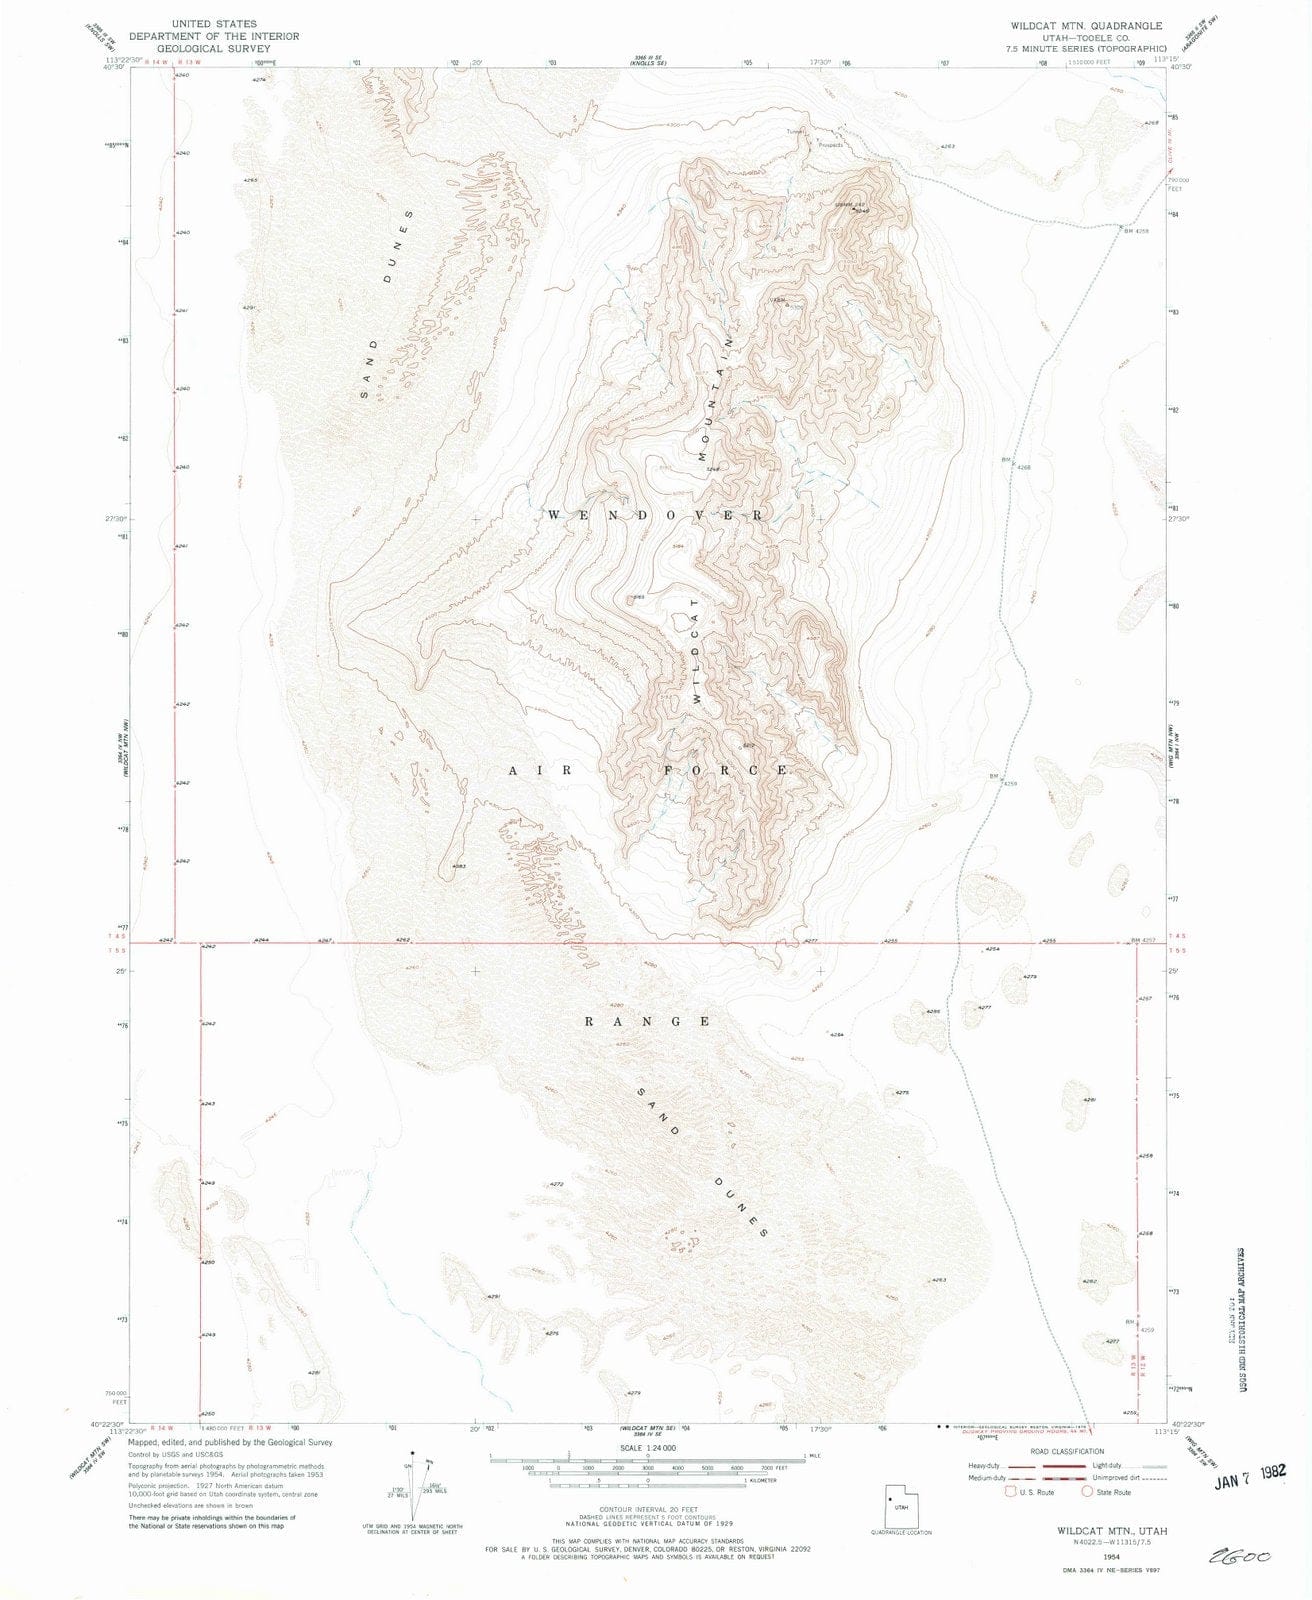 1954 Wildcat MTN, UT - Utah - USGS Topographic Map v2